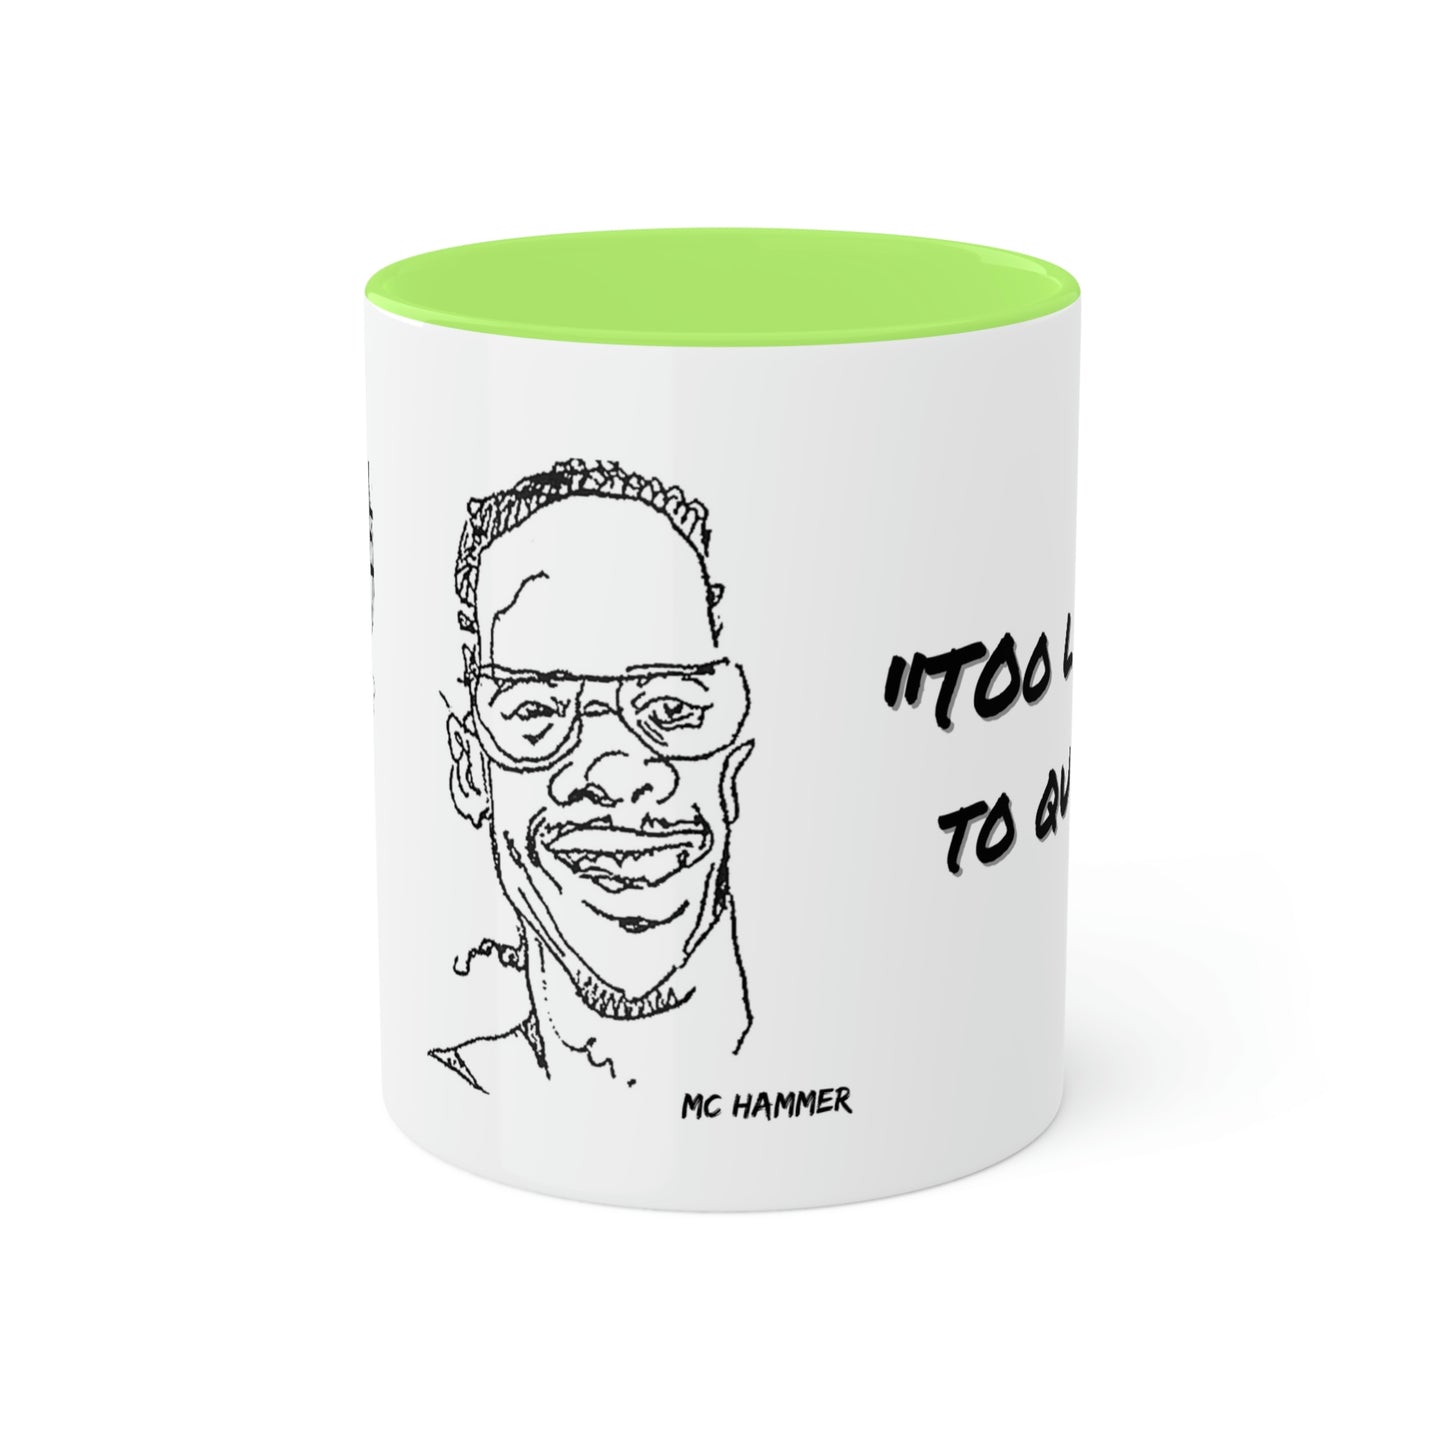 MC Hammer #tooLegitToQuit - Colorful Mugs, 11oz